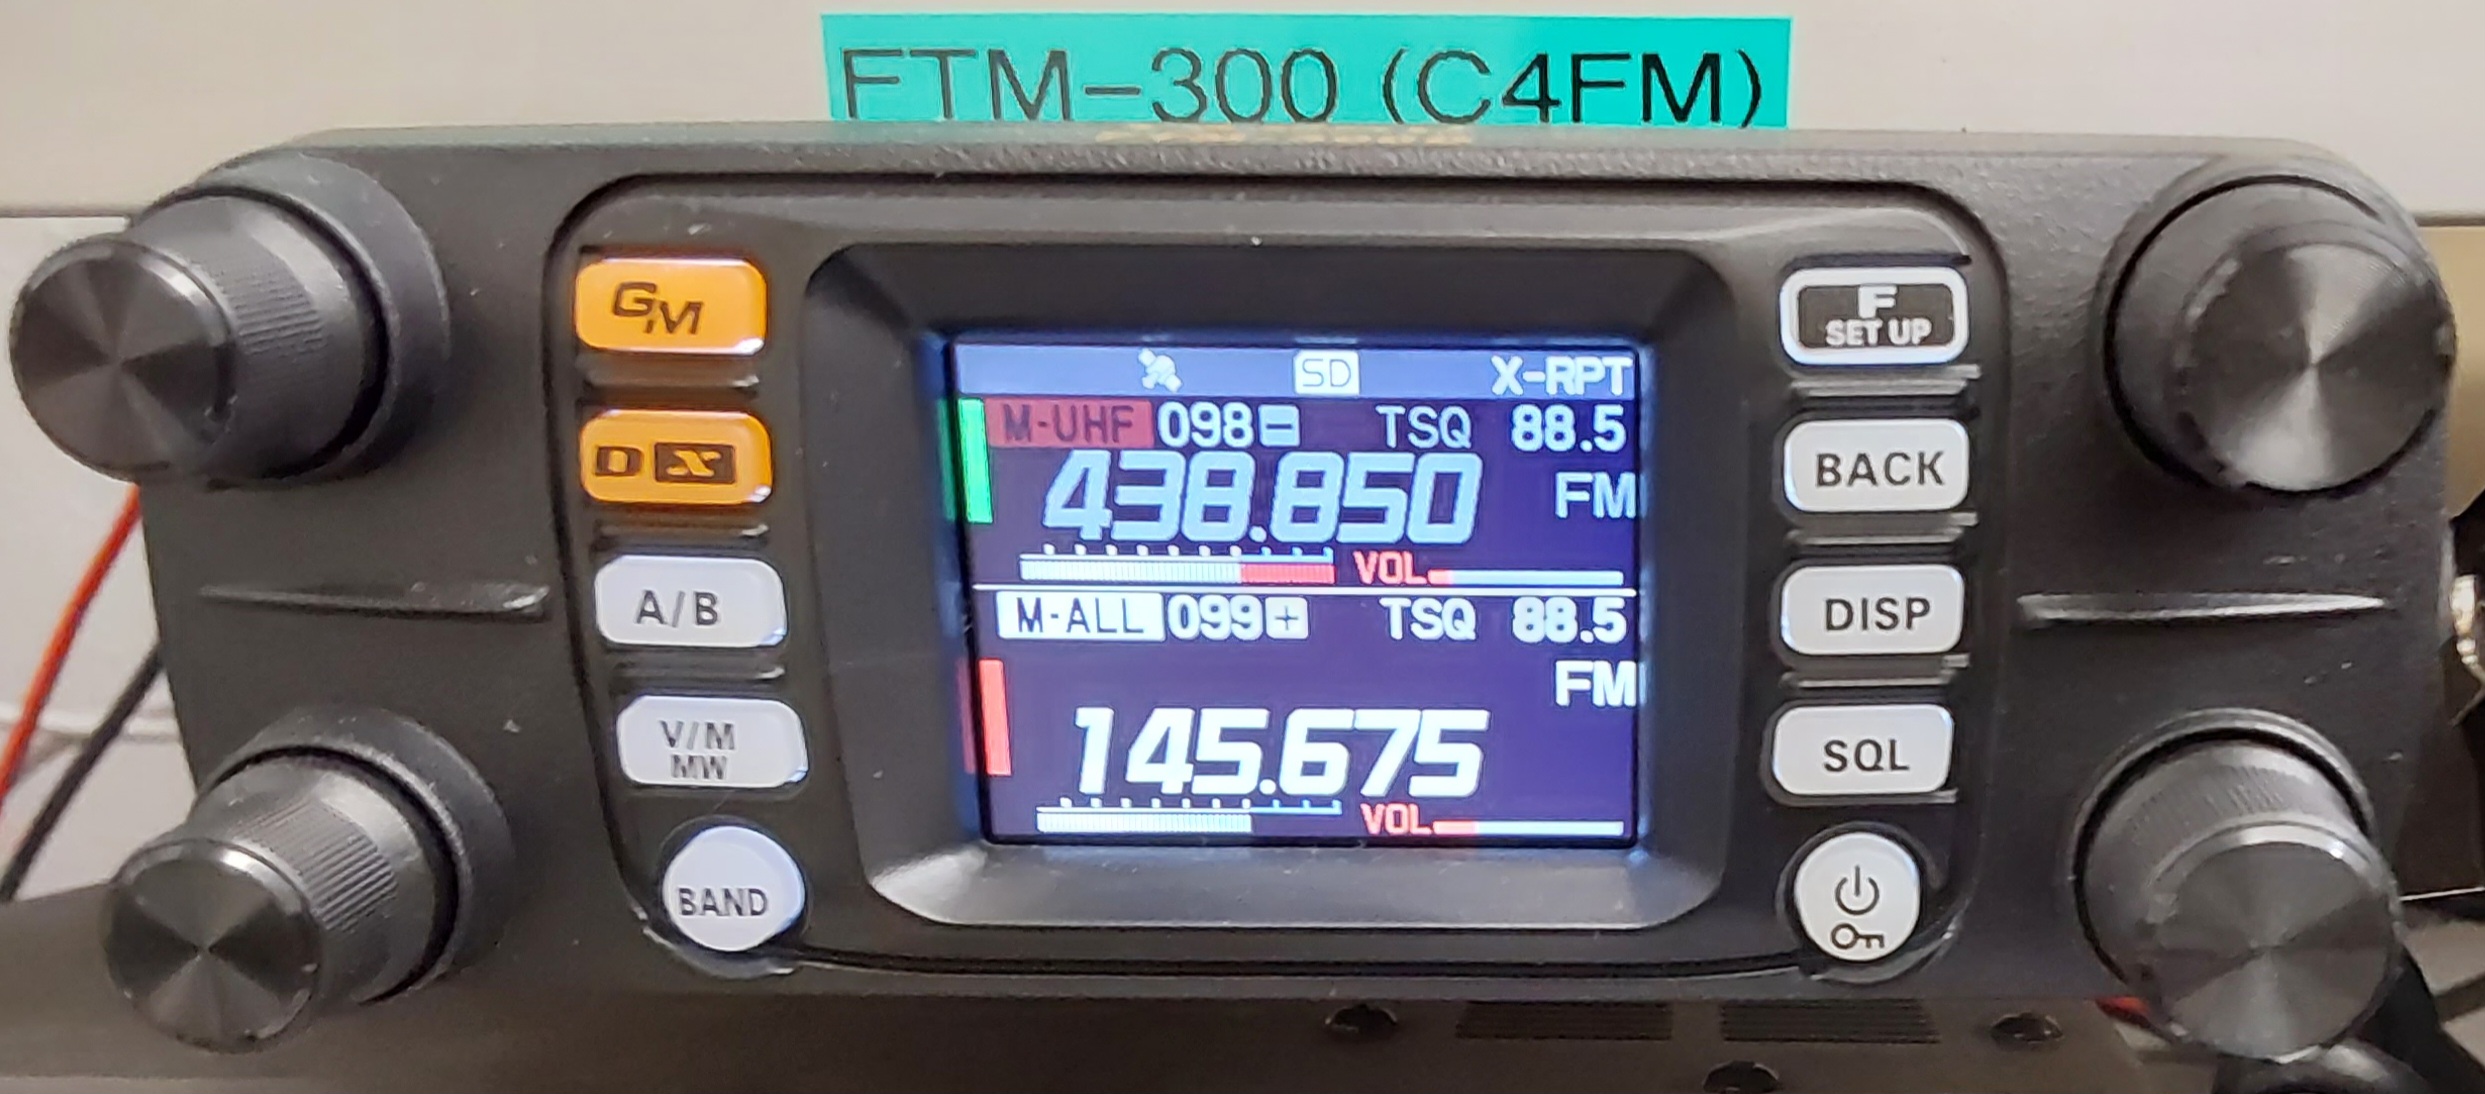 FTM 300 Crossband